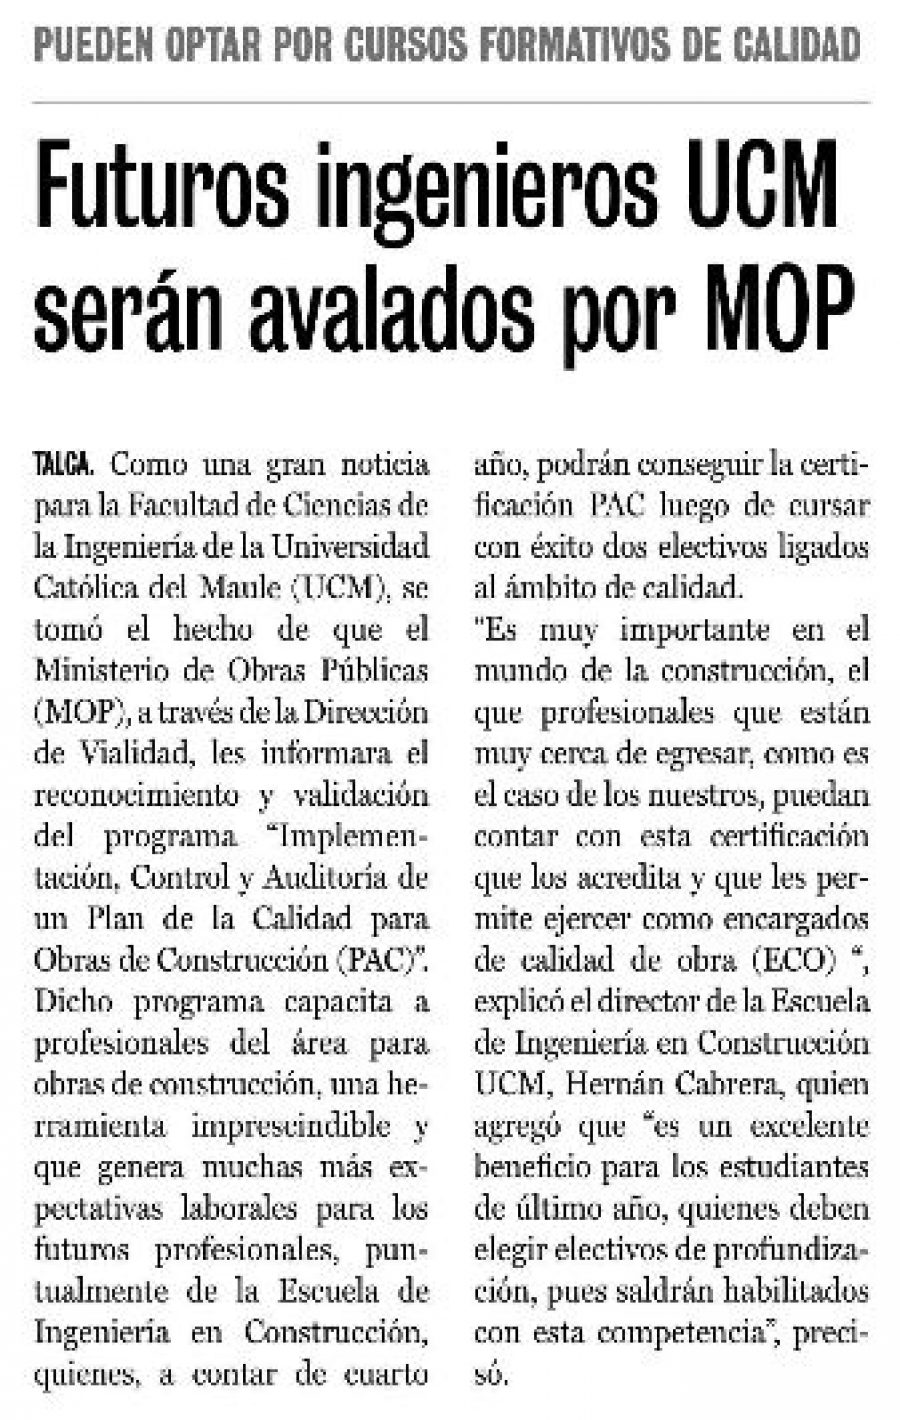 17 de abril en Diario La Prensa: “Futuros ingenieros UCM serán avalados por MOP”